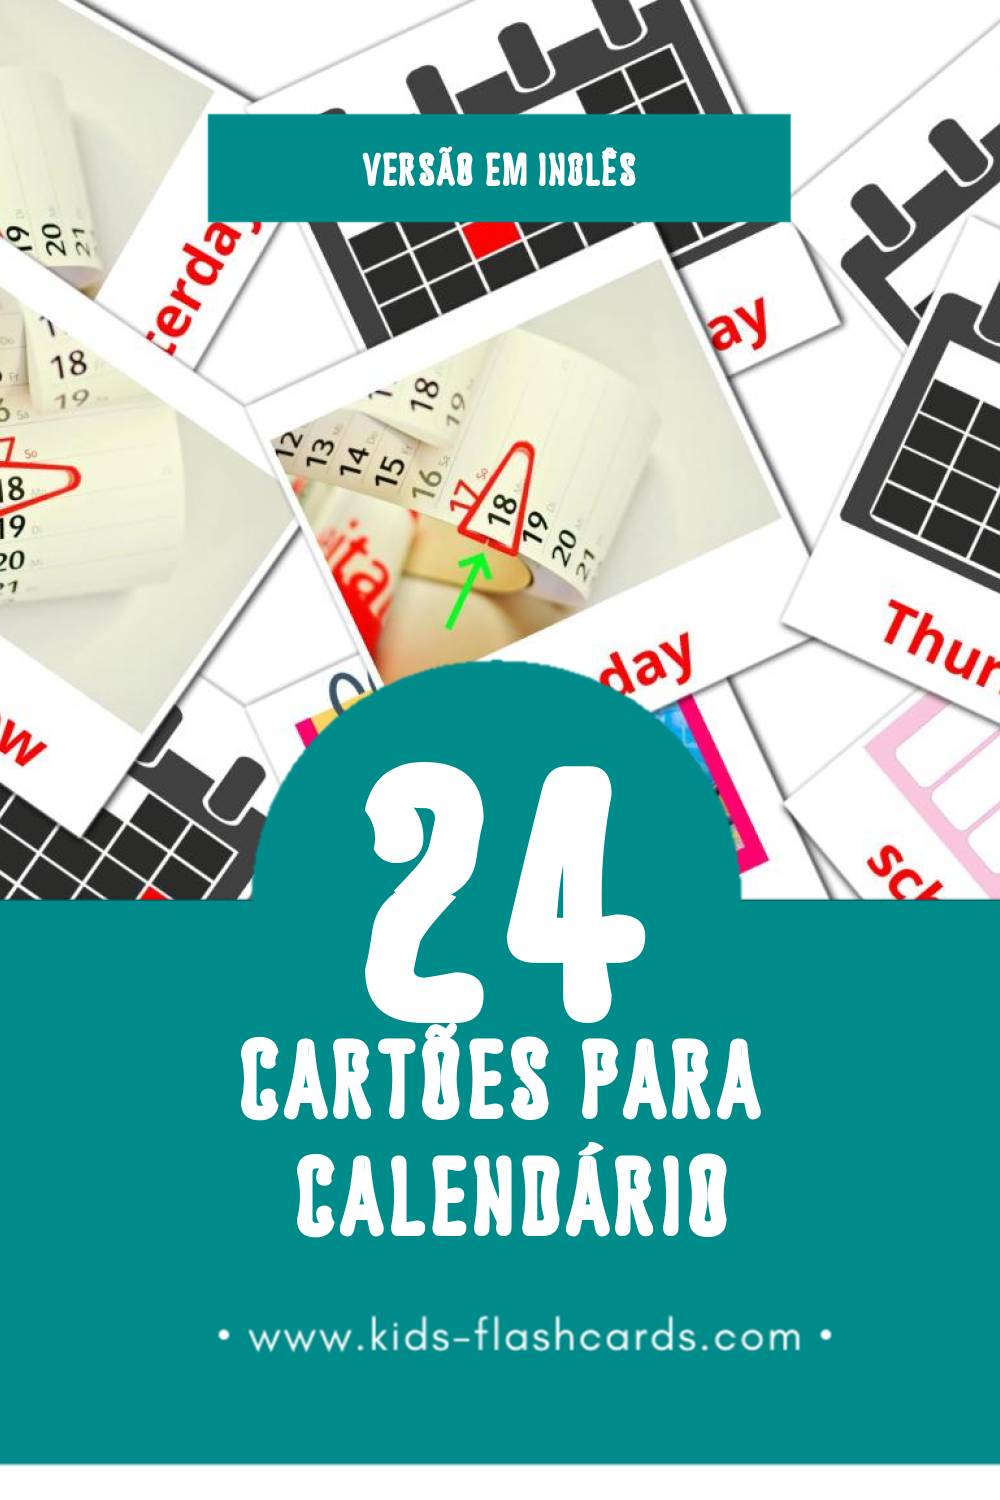 Flashcards de Calendar Visuais para Toddlers (24 cartões em Inglês)